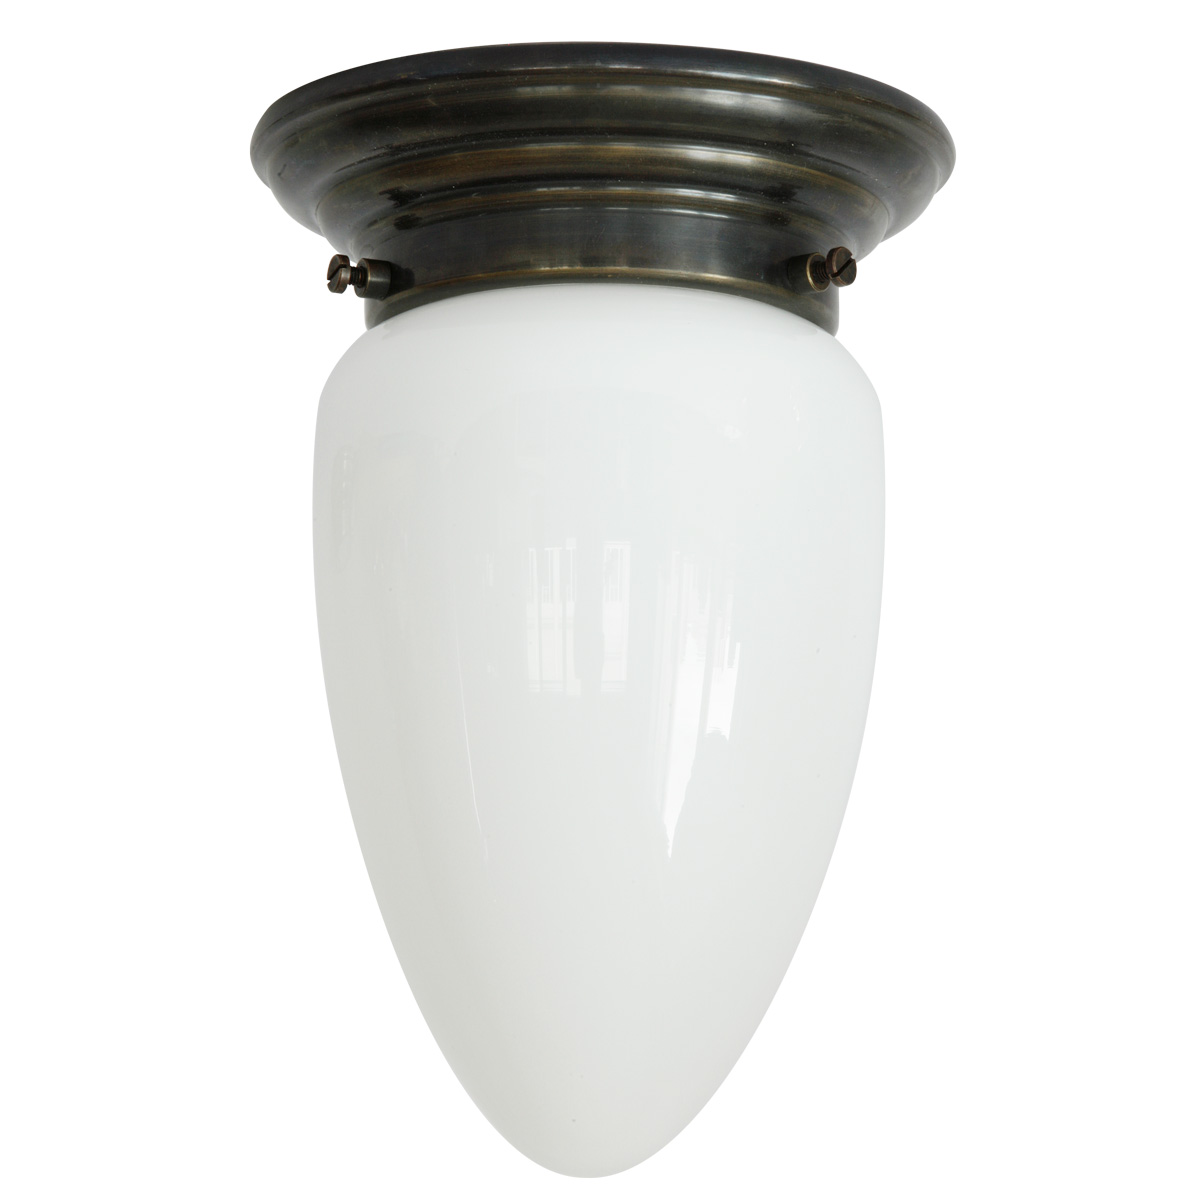 Art déco-Deckenlampe mit Zapfen-Opalglas Ø 14 cm: Deckenleuchte mit opalem Zapfen-Glasschirm, abgebildet mit Deckenteil in Messing dunkel patiniert (brüniert)